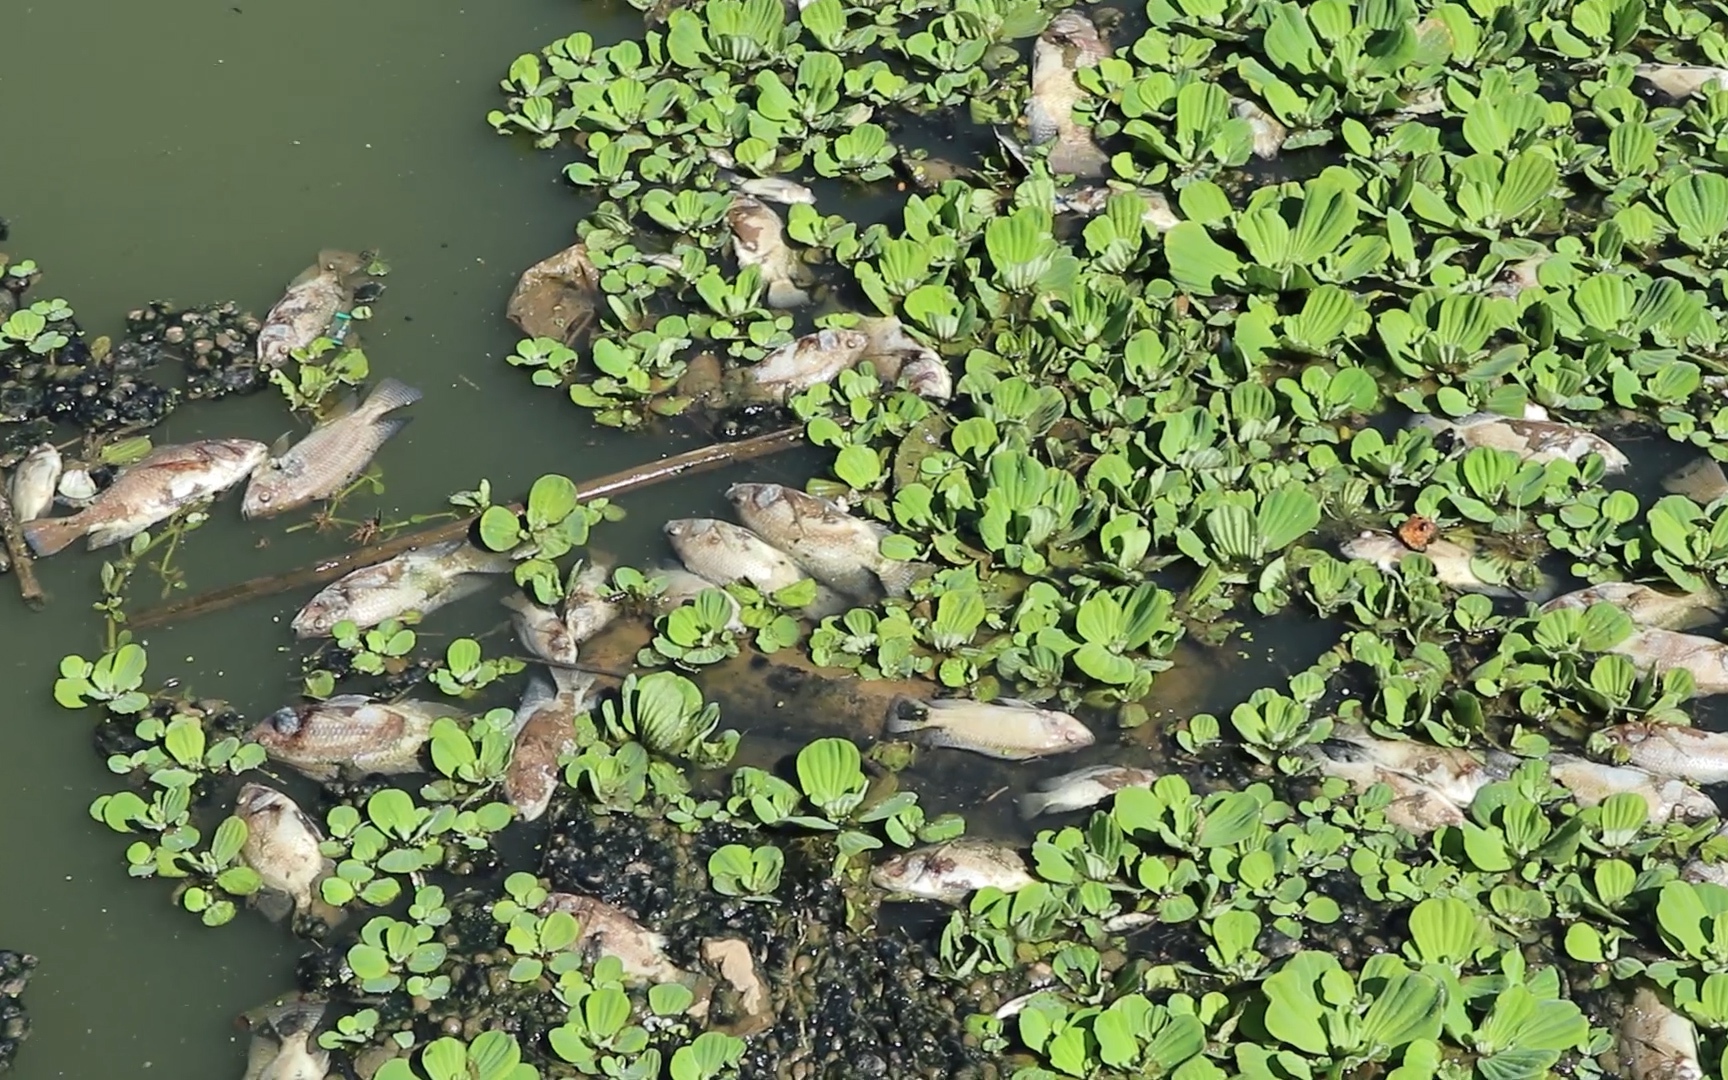 Video: Cận cảnh tình trạng ô nhiễm nghiêm trọng, cá chết la liệt tại các hồ lắng quanh hồ Xuân Hương ở Đà Lạt